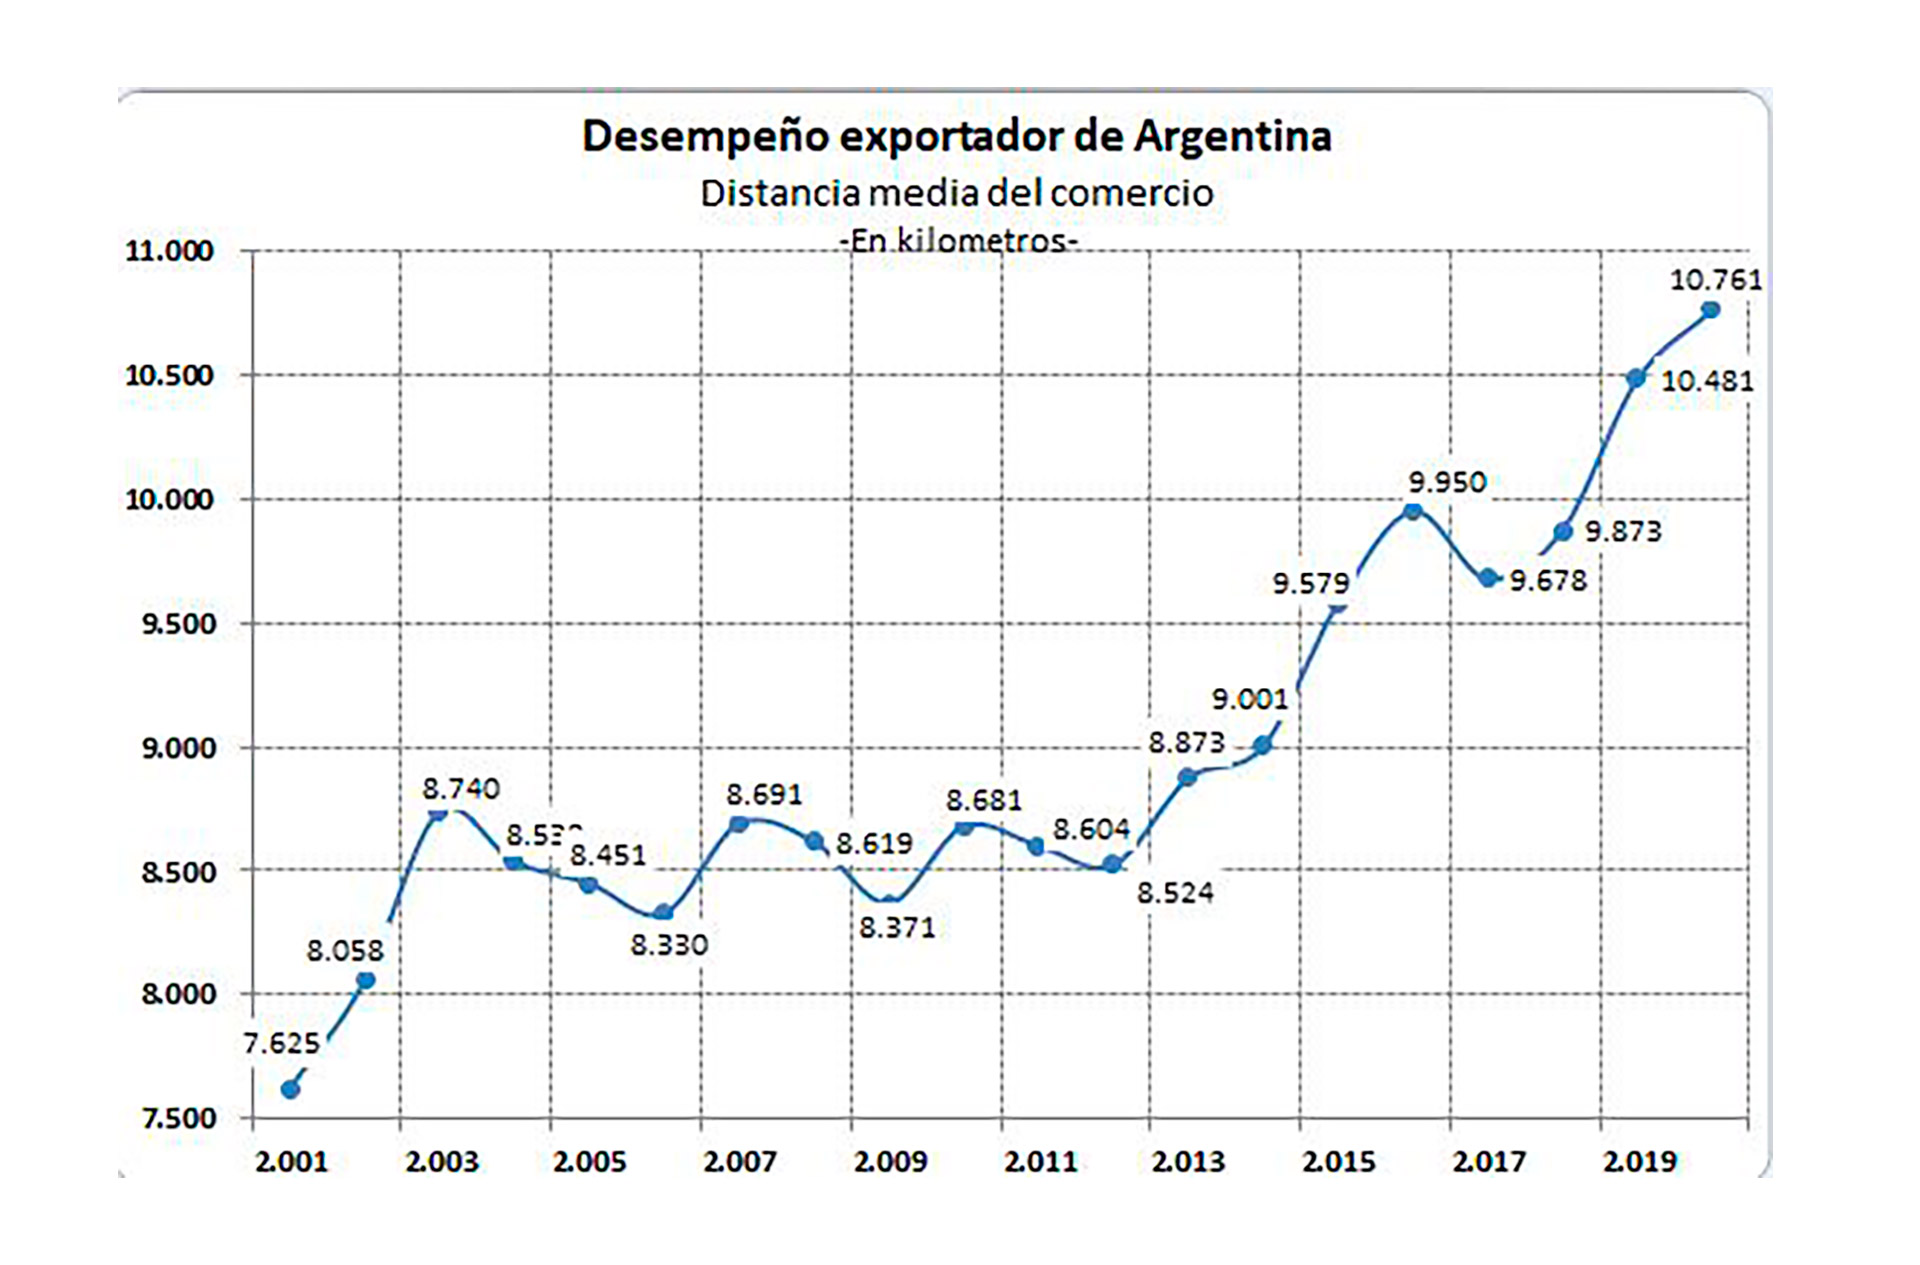 La "distancia media" del comercio exterior argentino pasó de 7.600 kilómetros en 2001 a más de 10.700 a fines de 2019. Un aumento de más de 4.000 kilómetros que se hacen notar en un marco de cuellos de botella y encarecimiento del cargo marítimo internacional